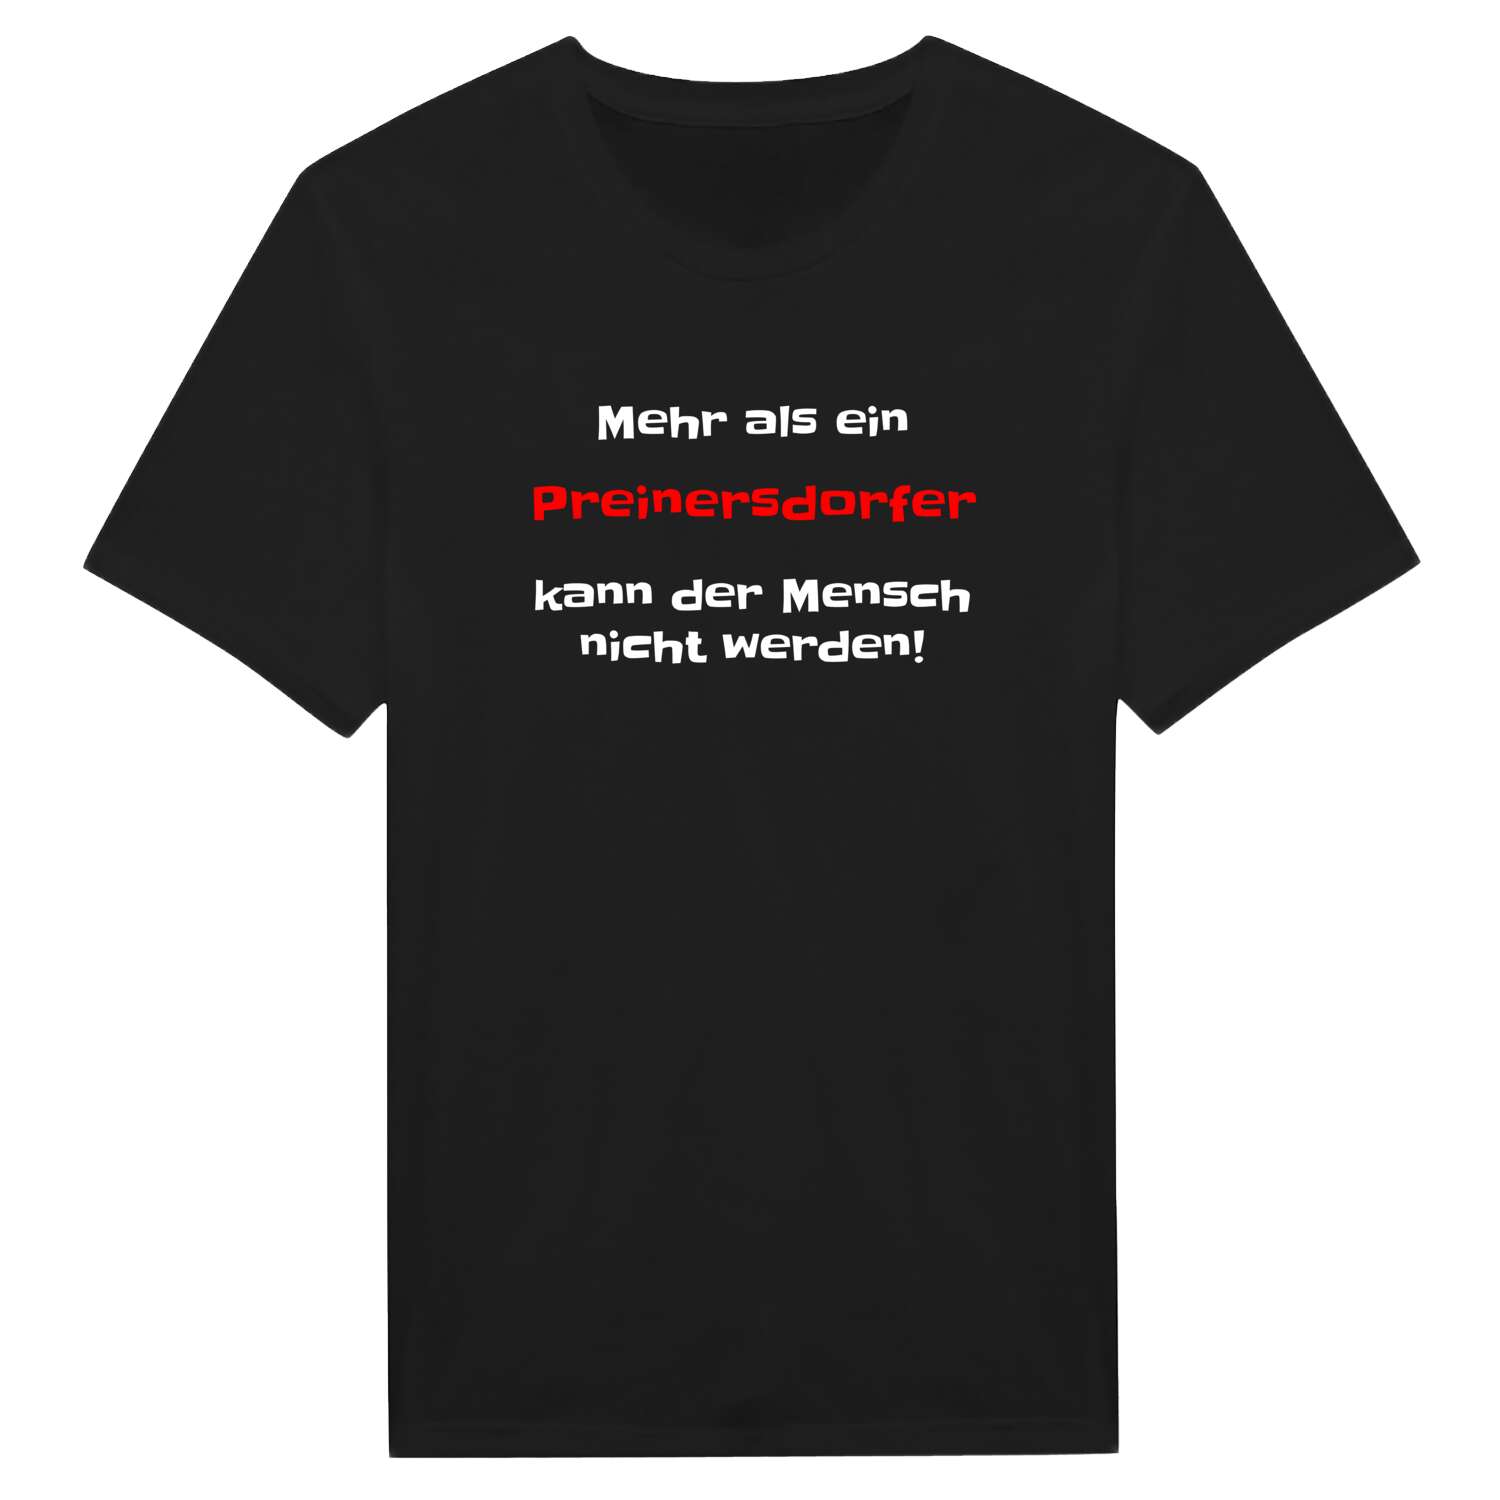 Preinersdorf T-Shirt »Mehr als ein«